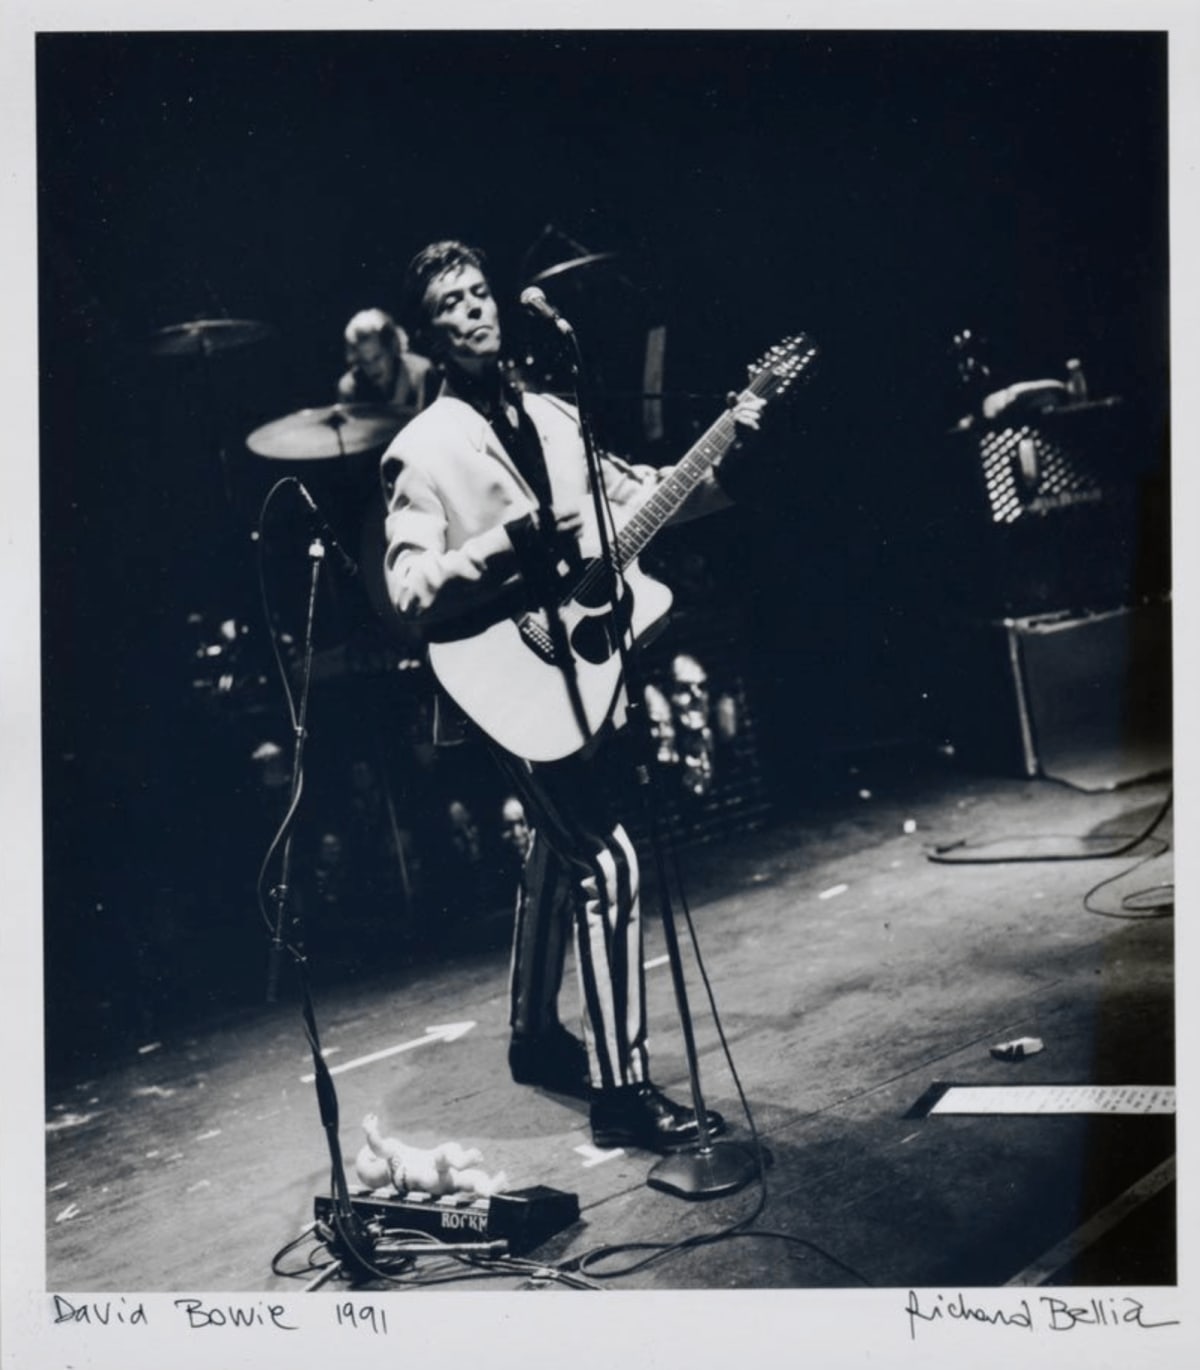 David Bowie - Concert de Tin Machine, 1991